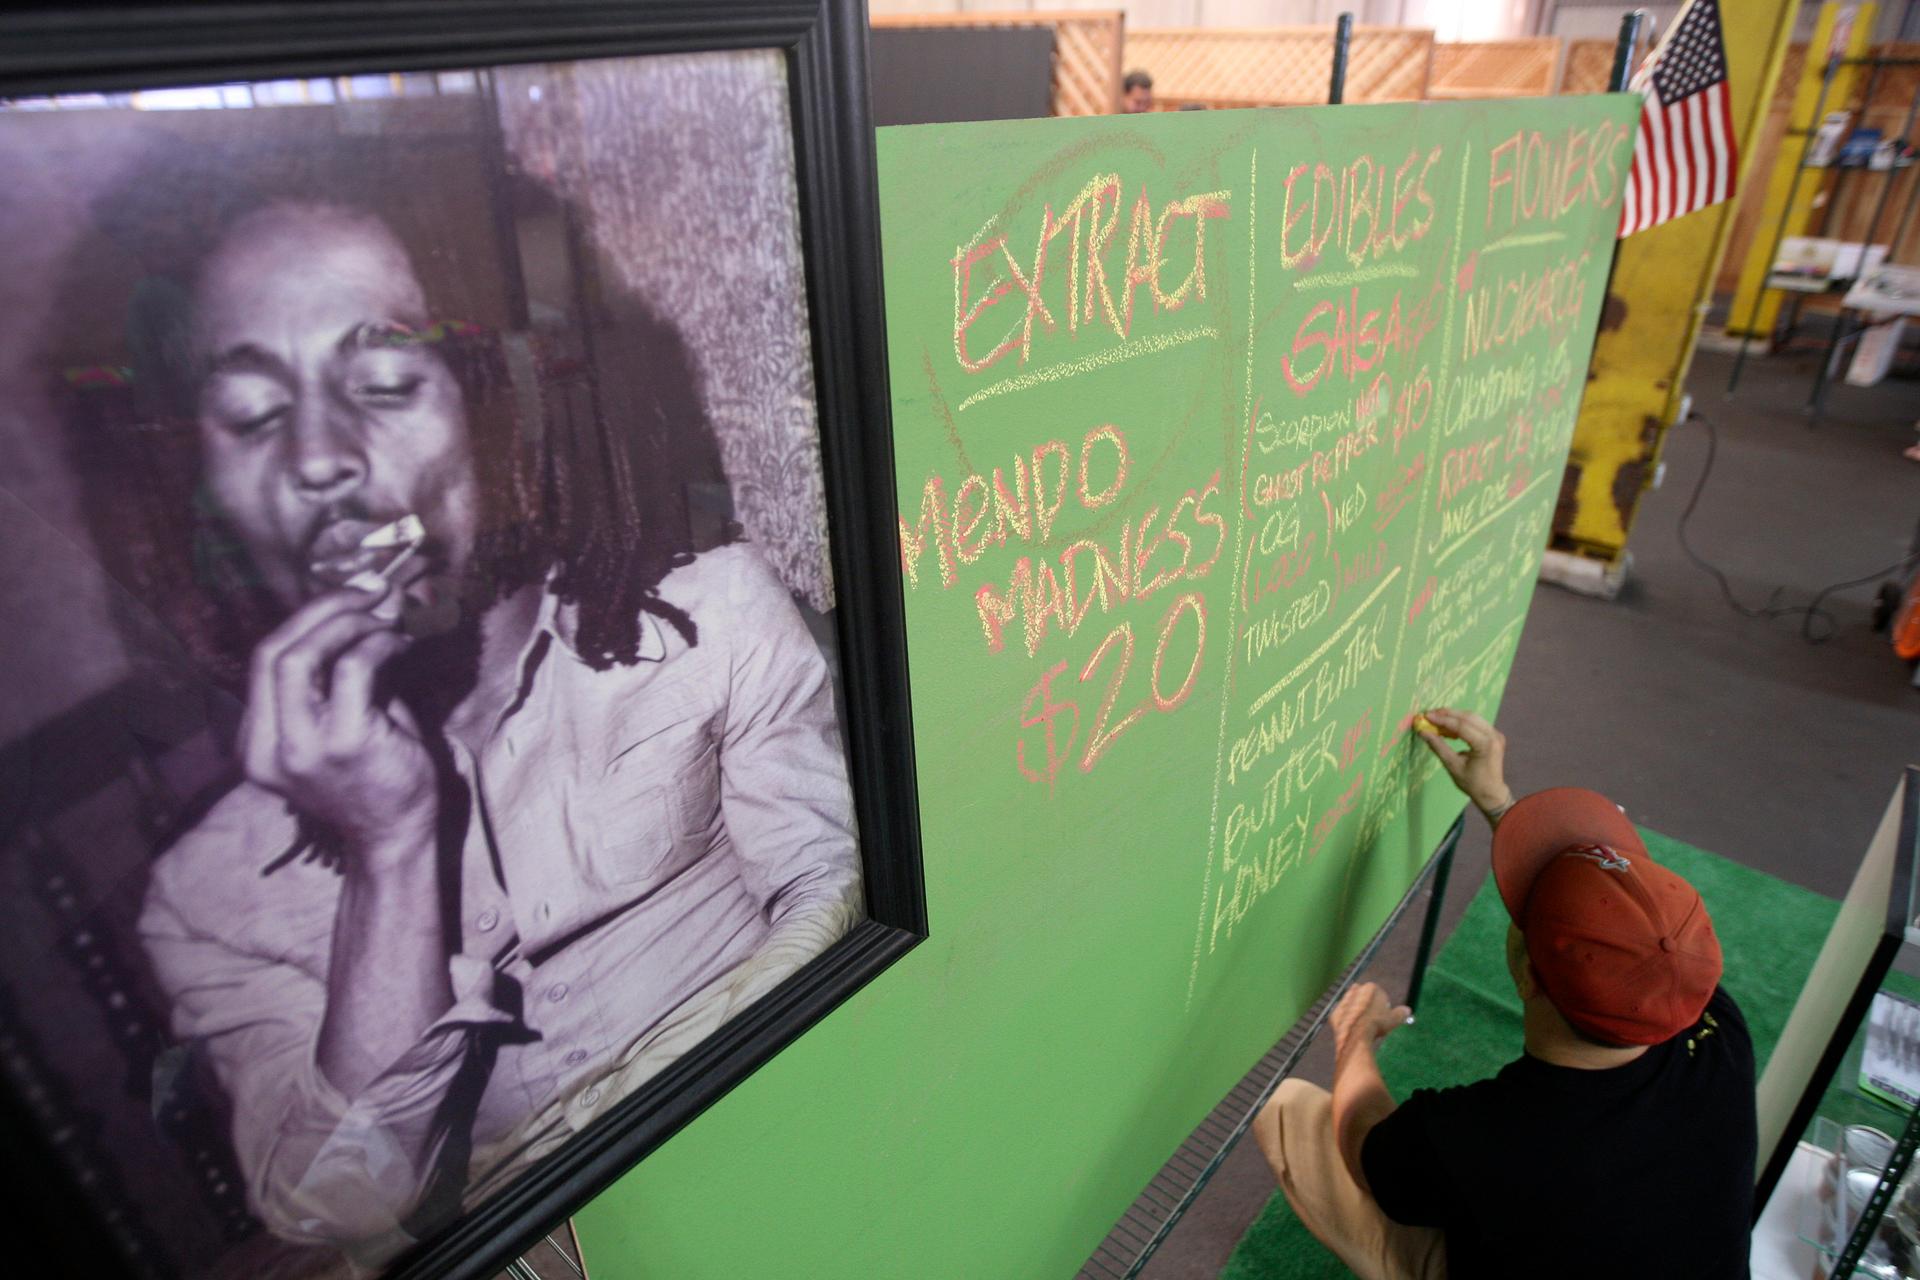 A portrait of Bob Marley hangs in a market in Los Angeles